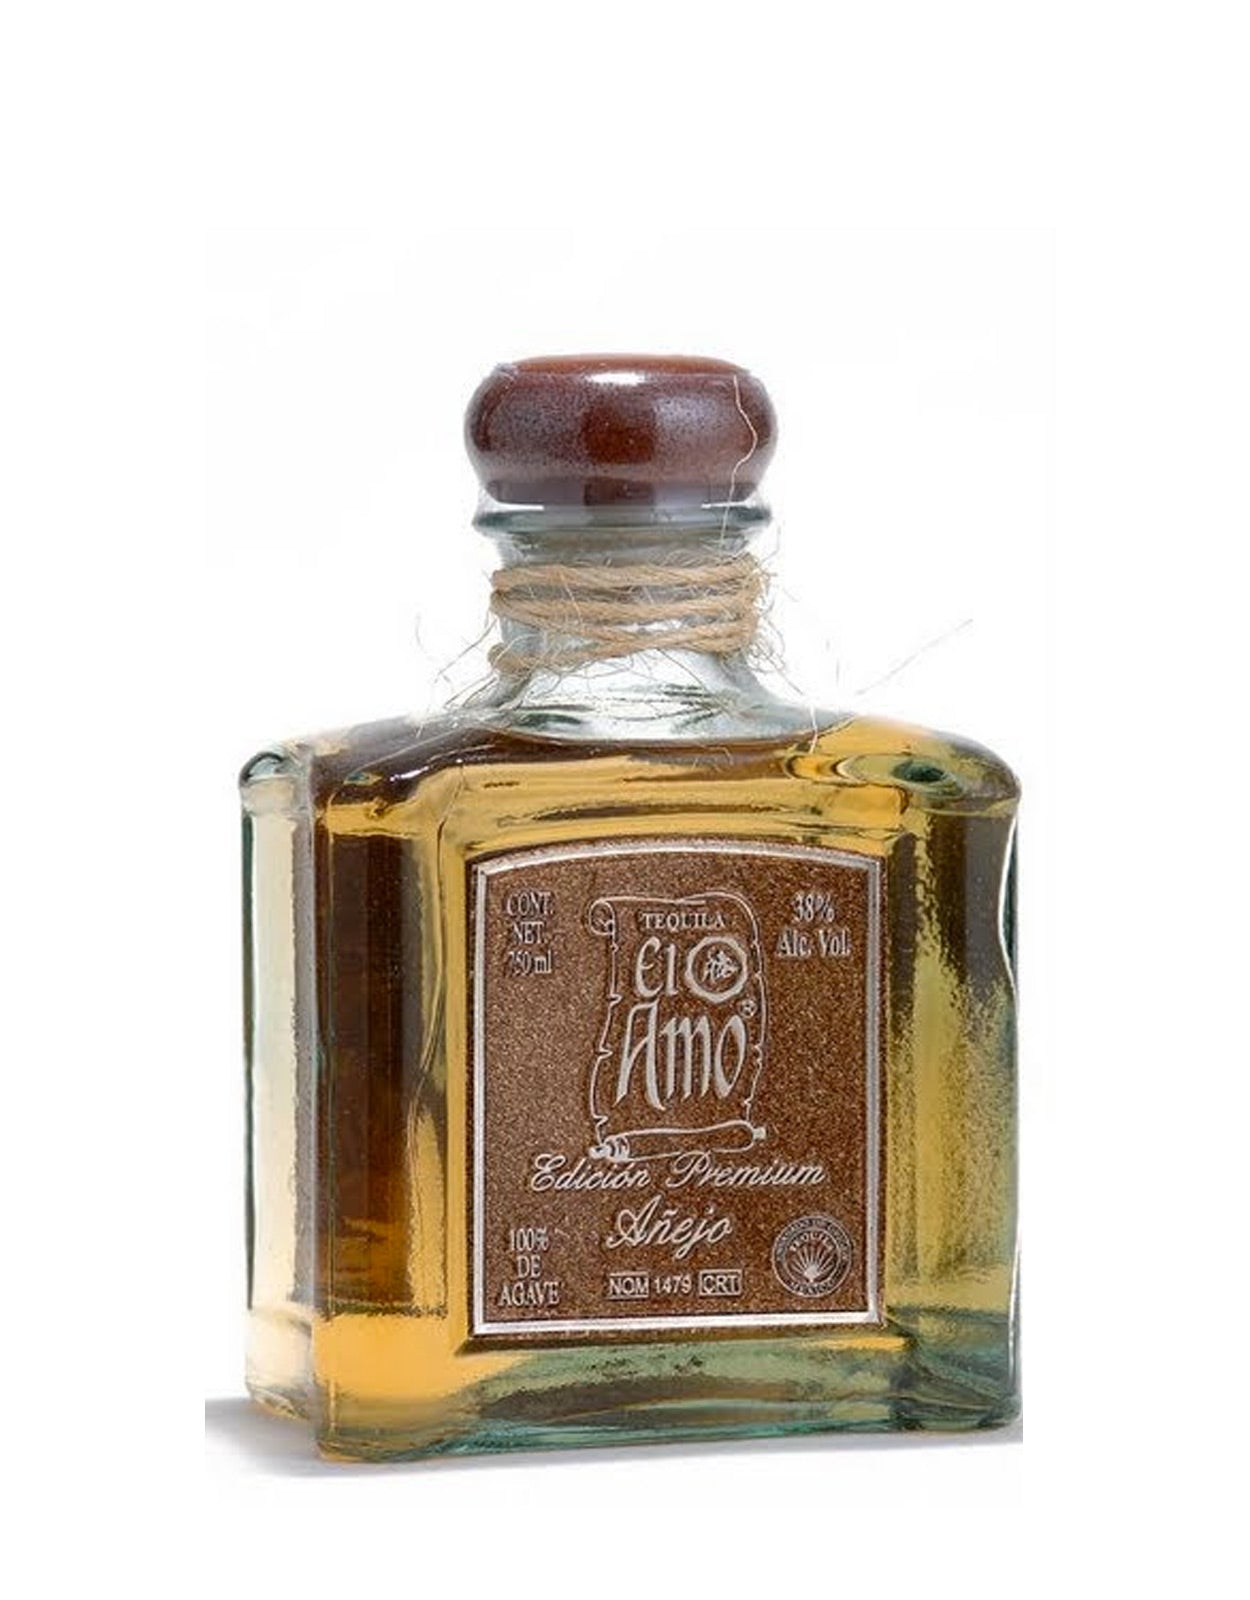 El Amo Anejo Edicion Premium Tequila